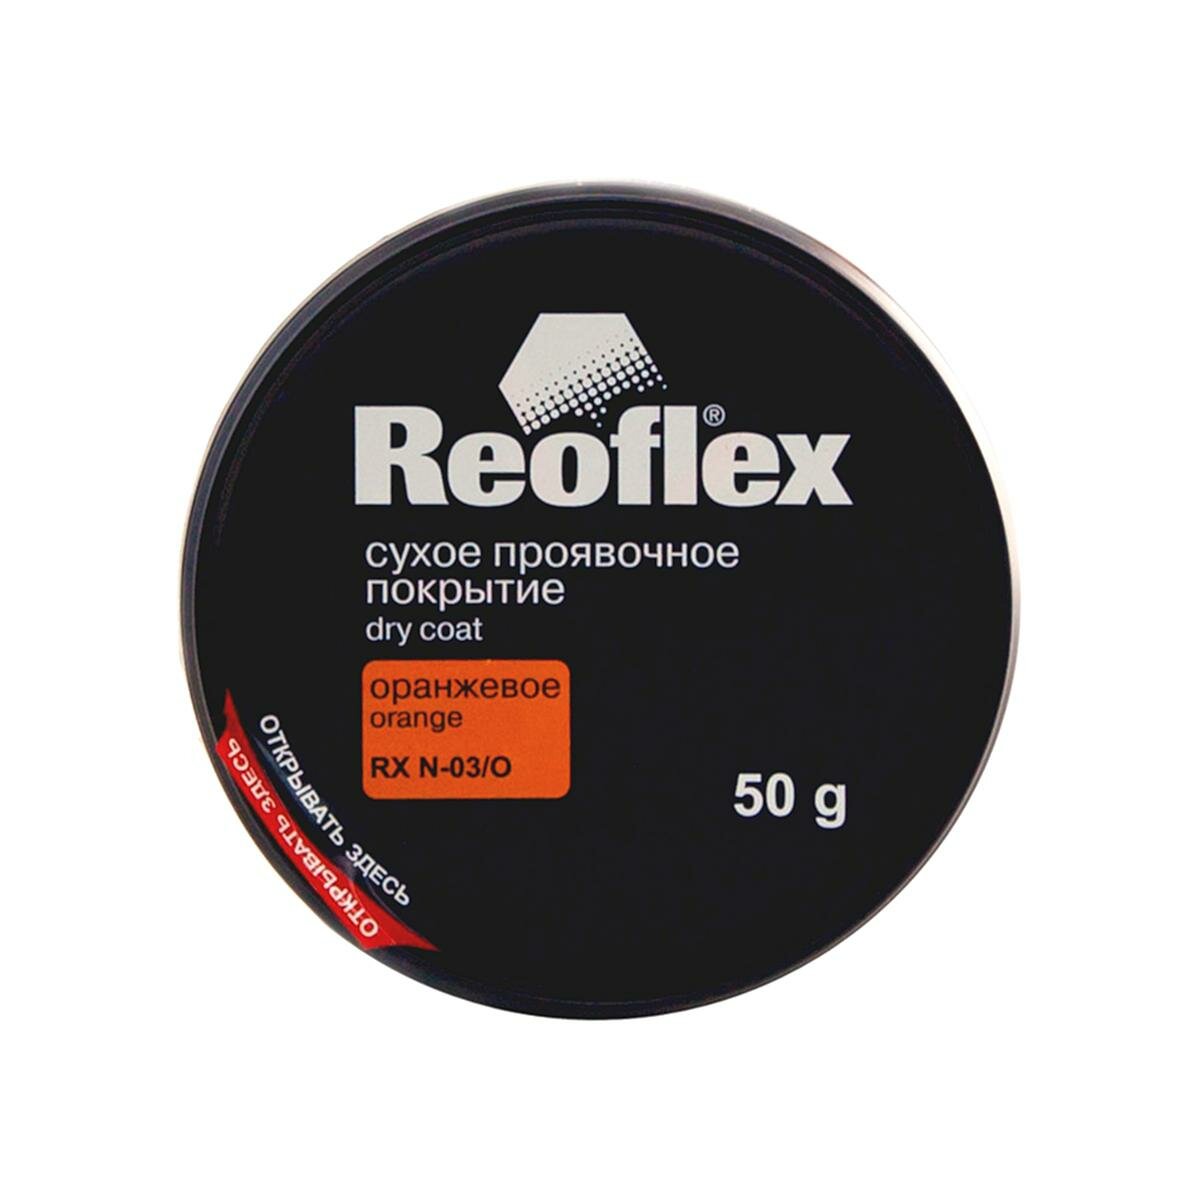 Сухое проявочное покрытие Reoflex RX N-03/O Dry Coat оранжевый 50 г.